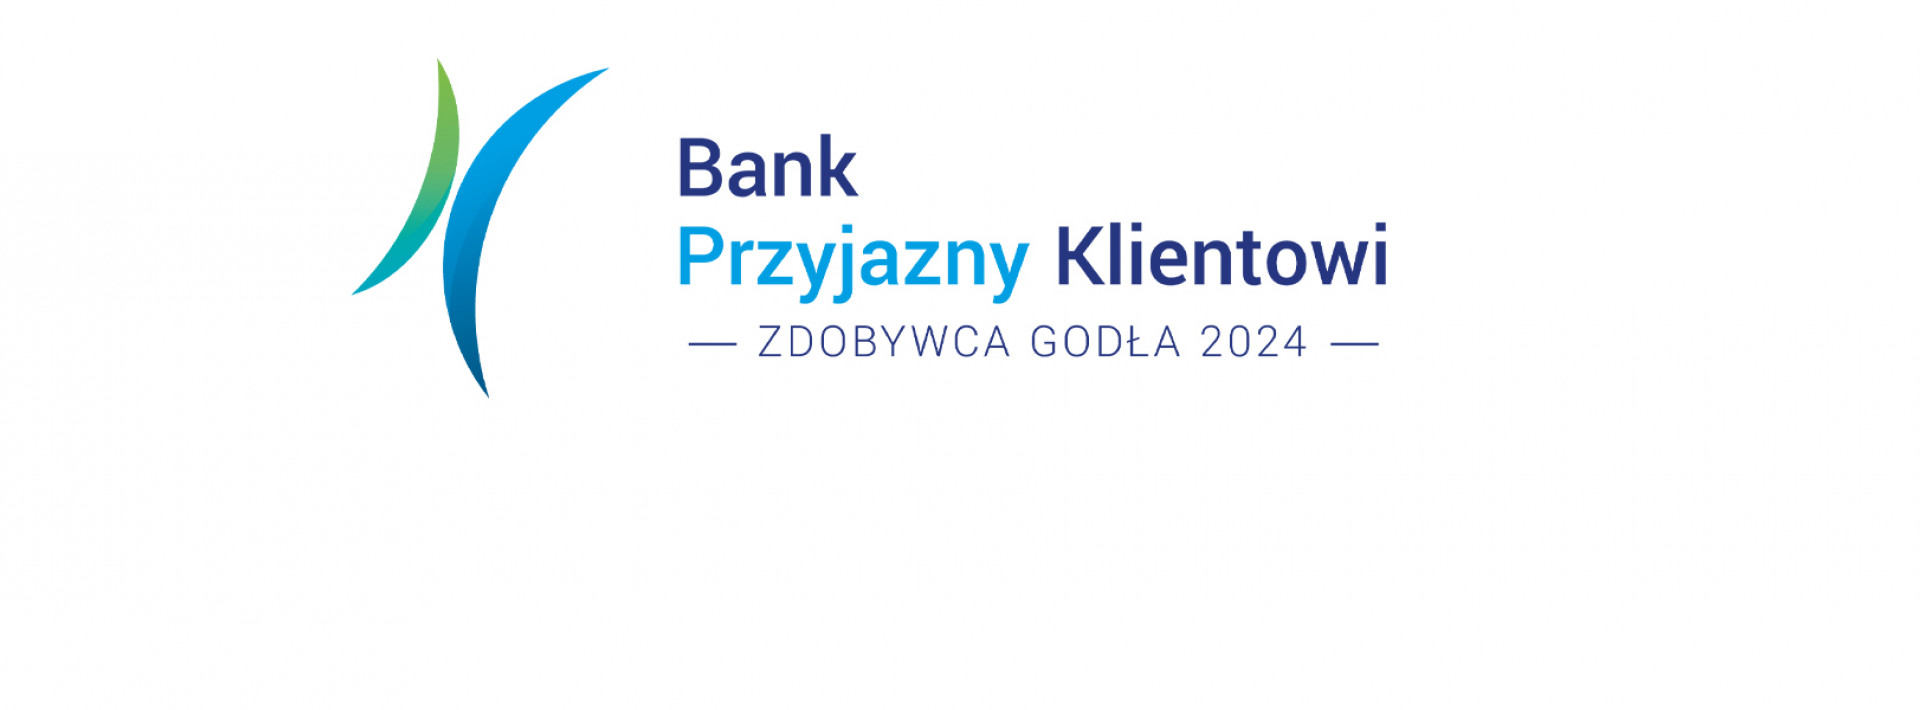 Zdobyliśmy godło Bank Przyjazny Klientowi 2024!